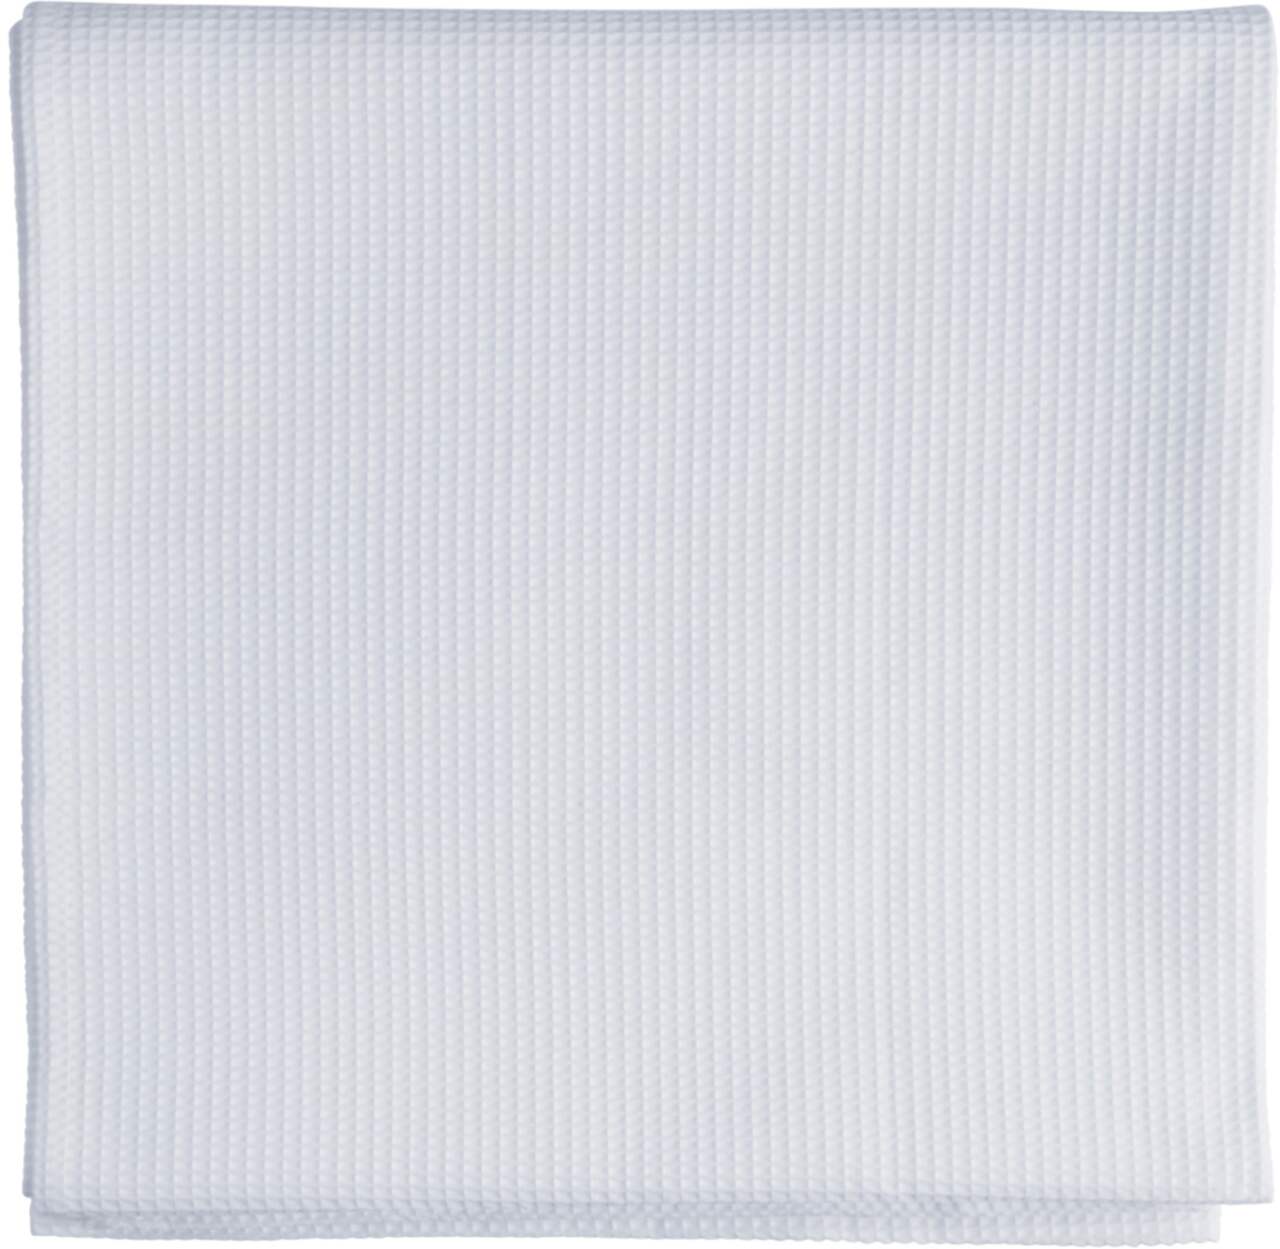 Rideau de douche en tissu CANVAS, lavable à la machine, blanc, 72 x 72 po